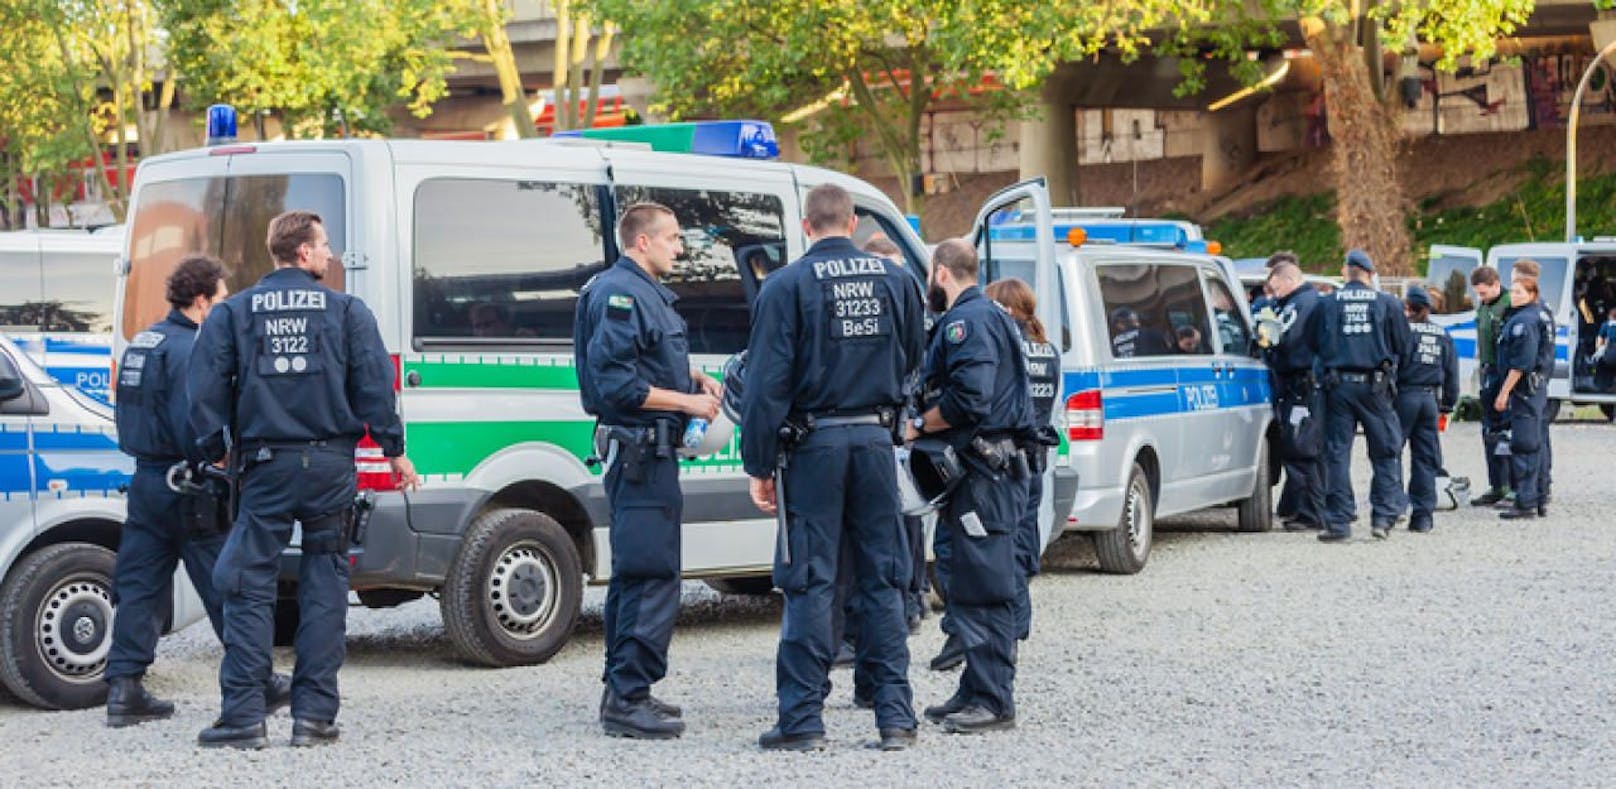 Polizei in Köln (Archivfoto)